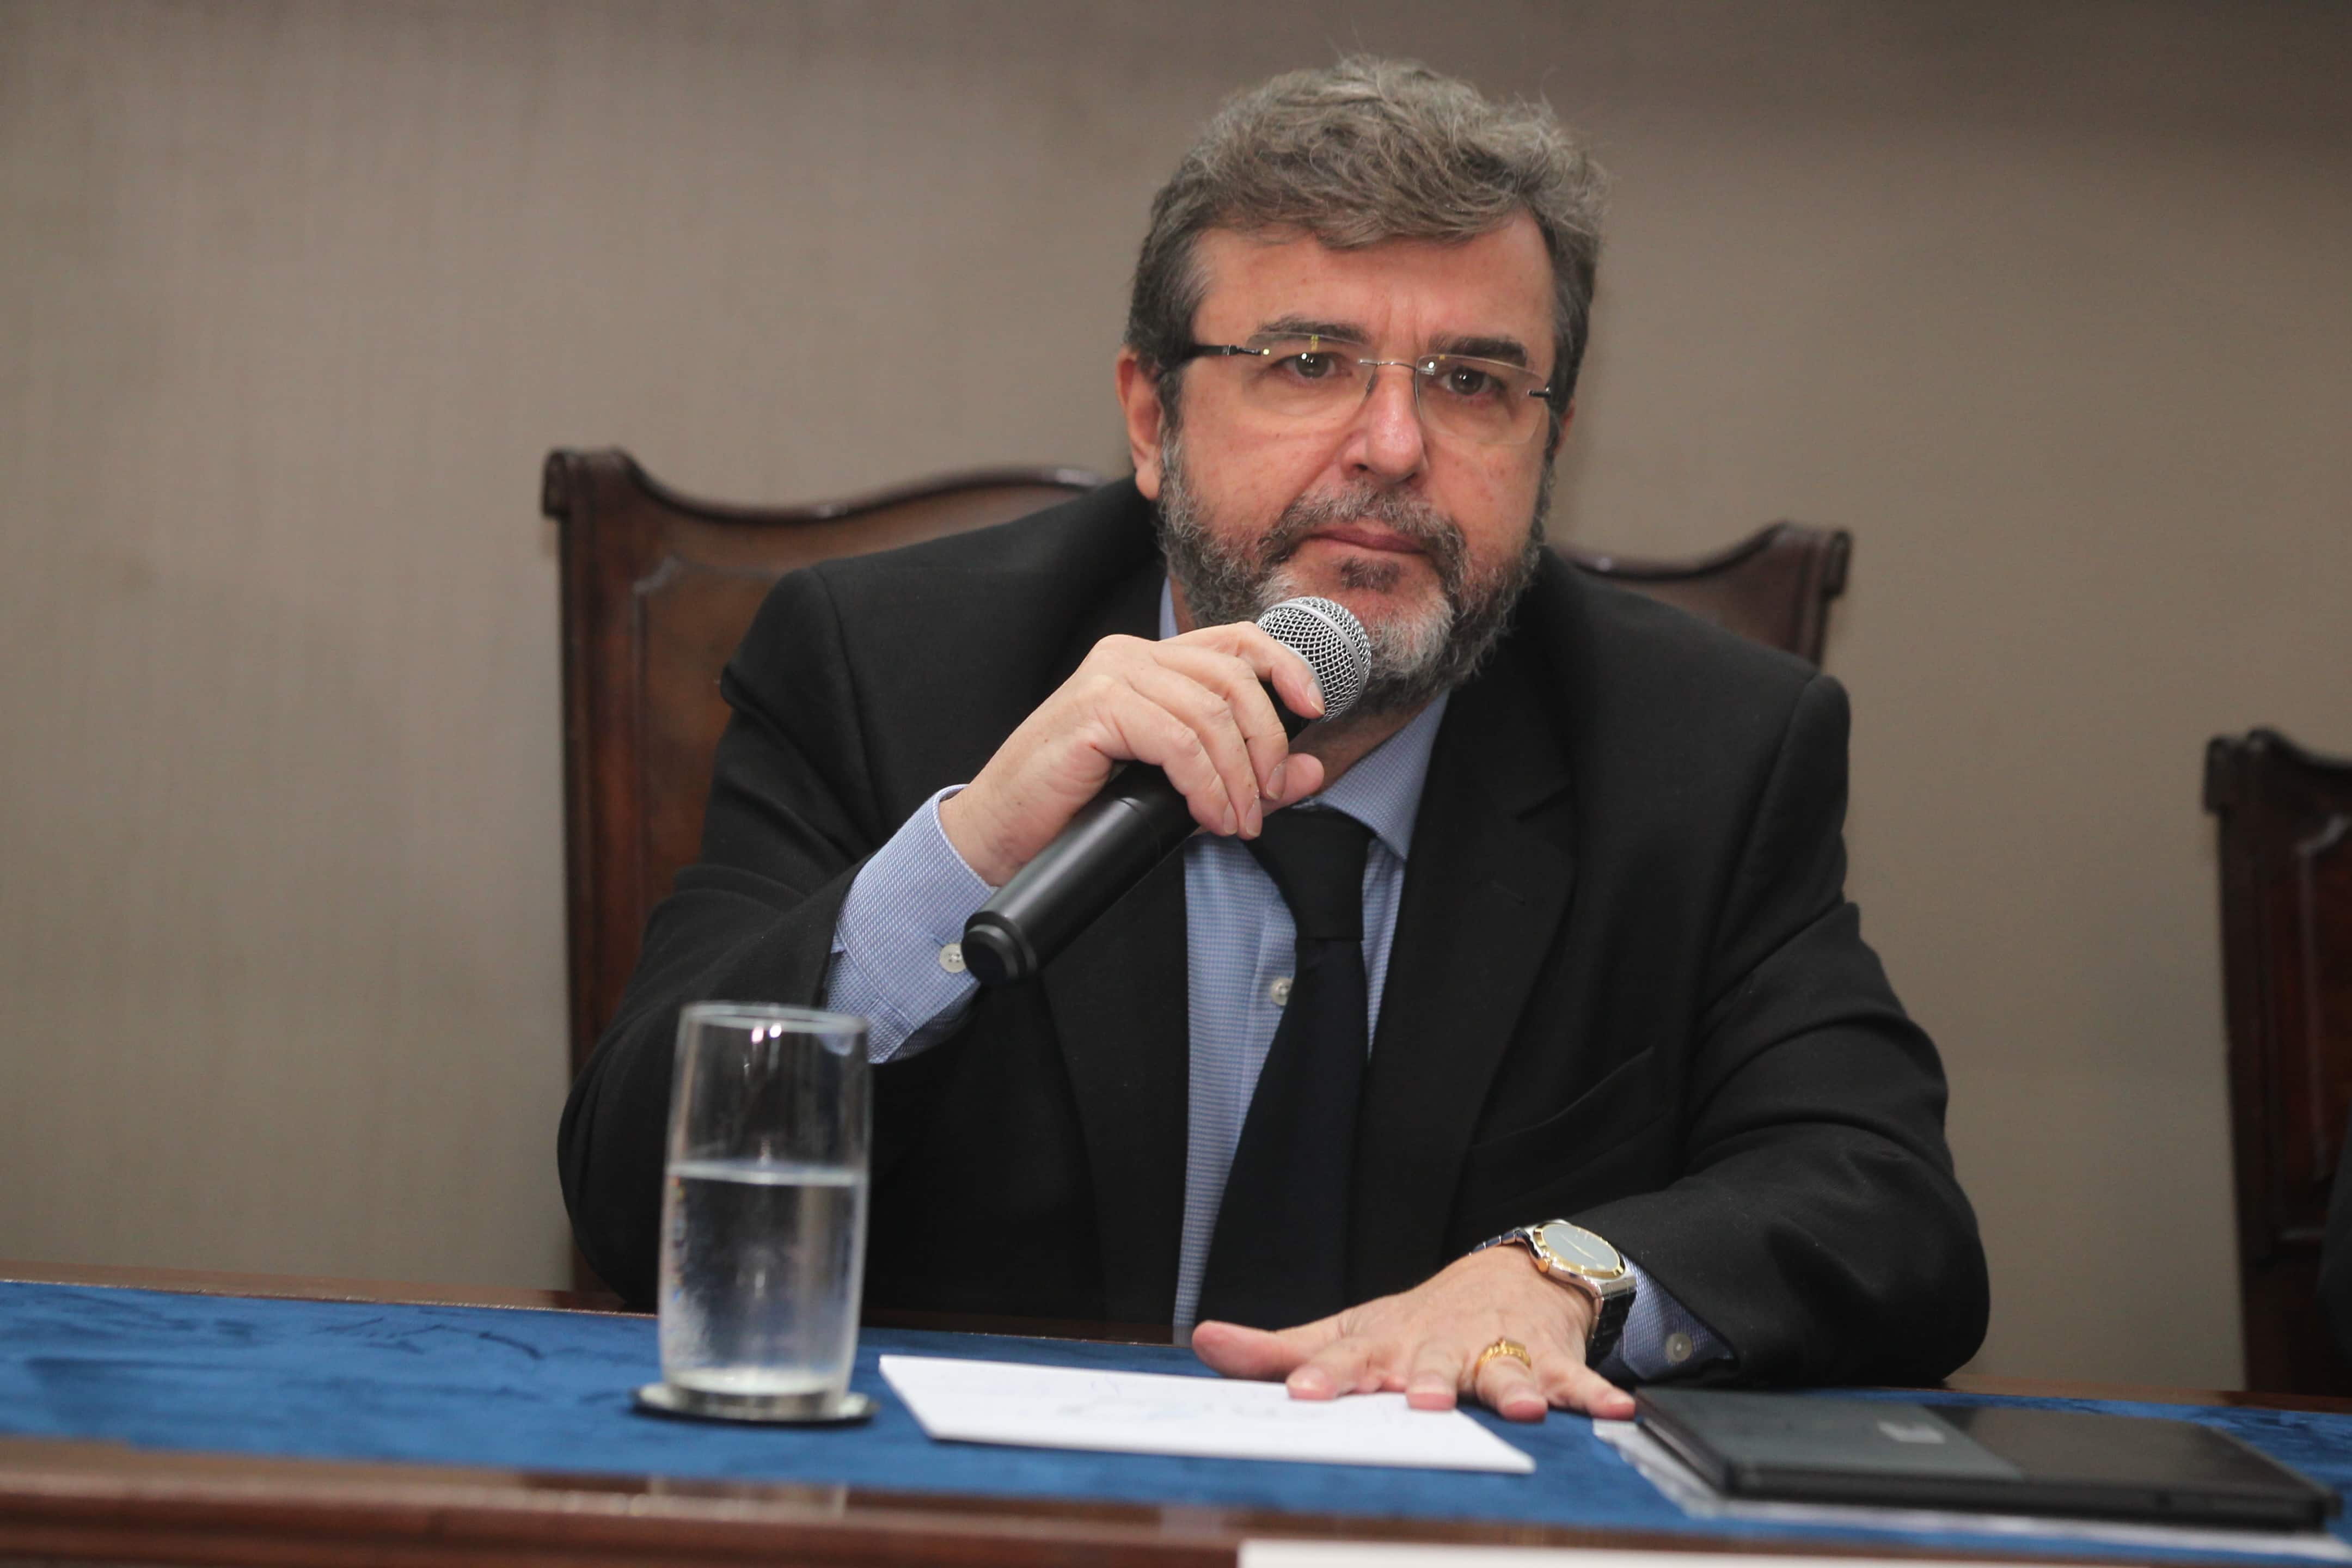 Mario Povia atua como consultor em regulação portuária, além de ter sido diretor da Antaq